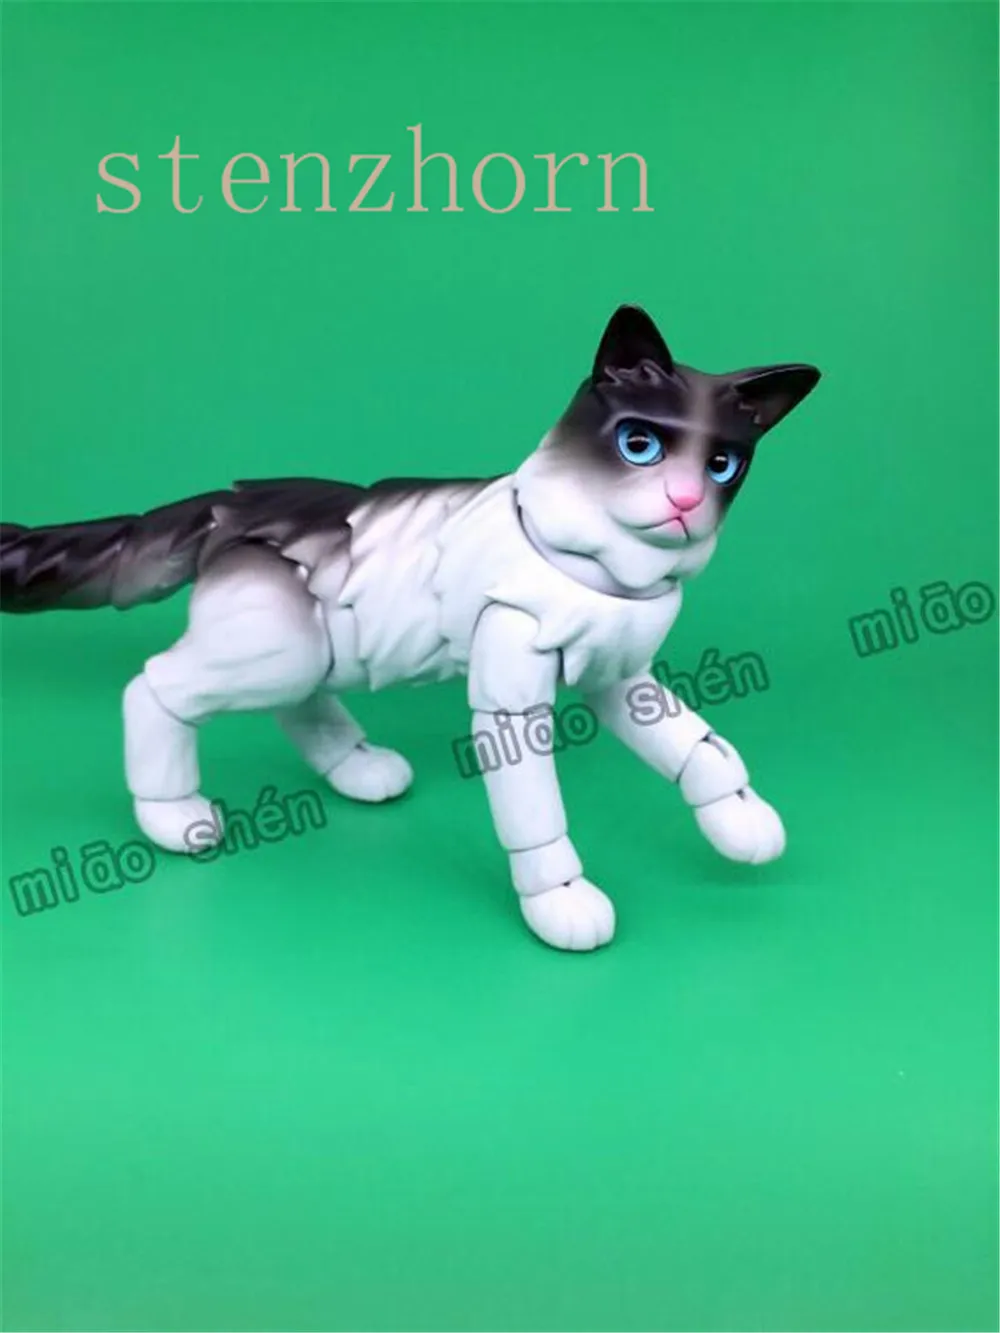 StenzhornFashion оригинальная bjddoll Топ кошка Высокое качество домашняя кукла бесплатные глаза